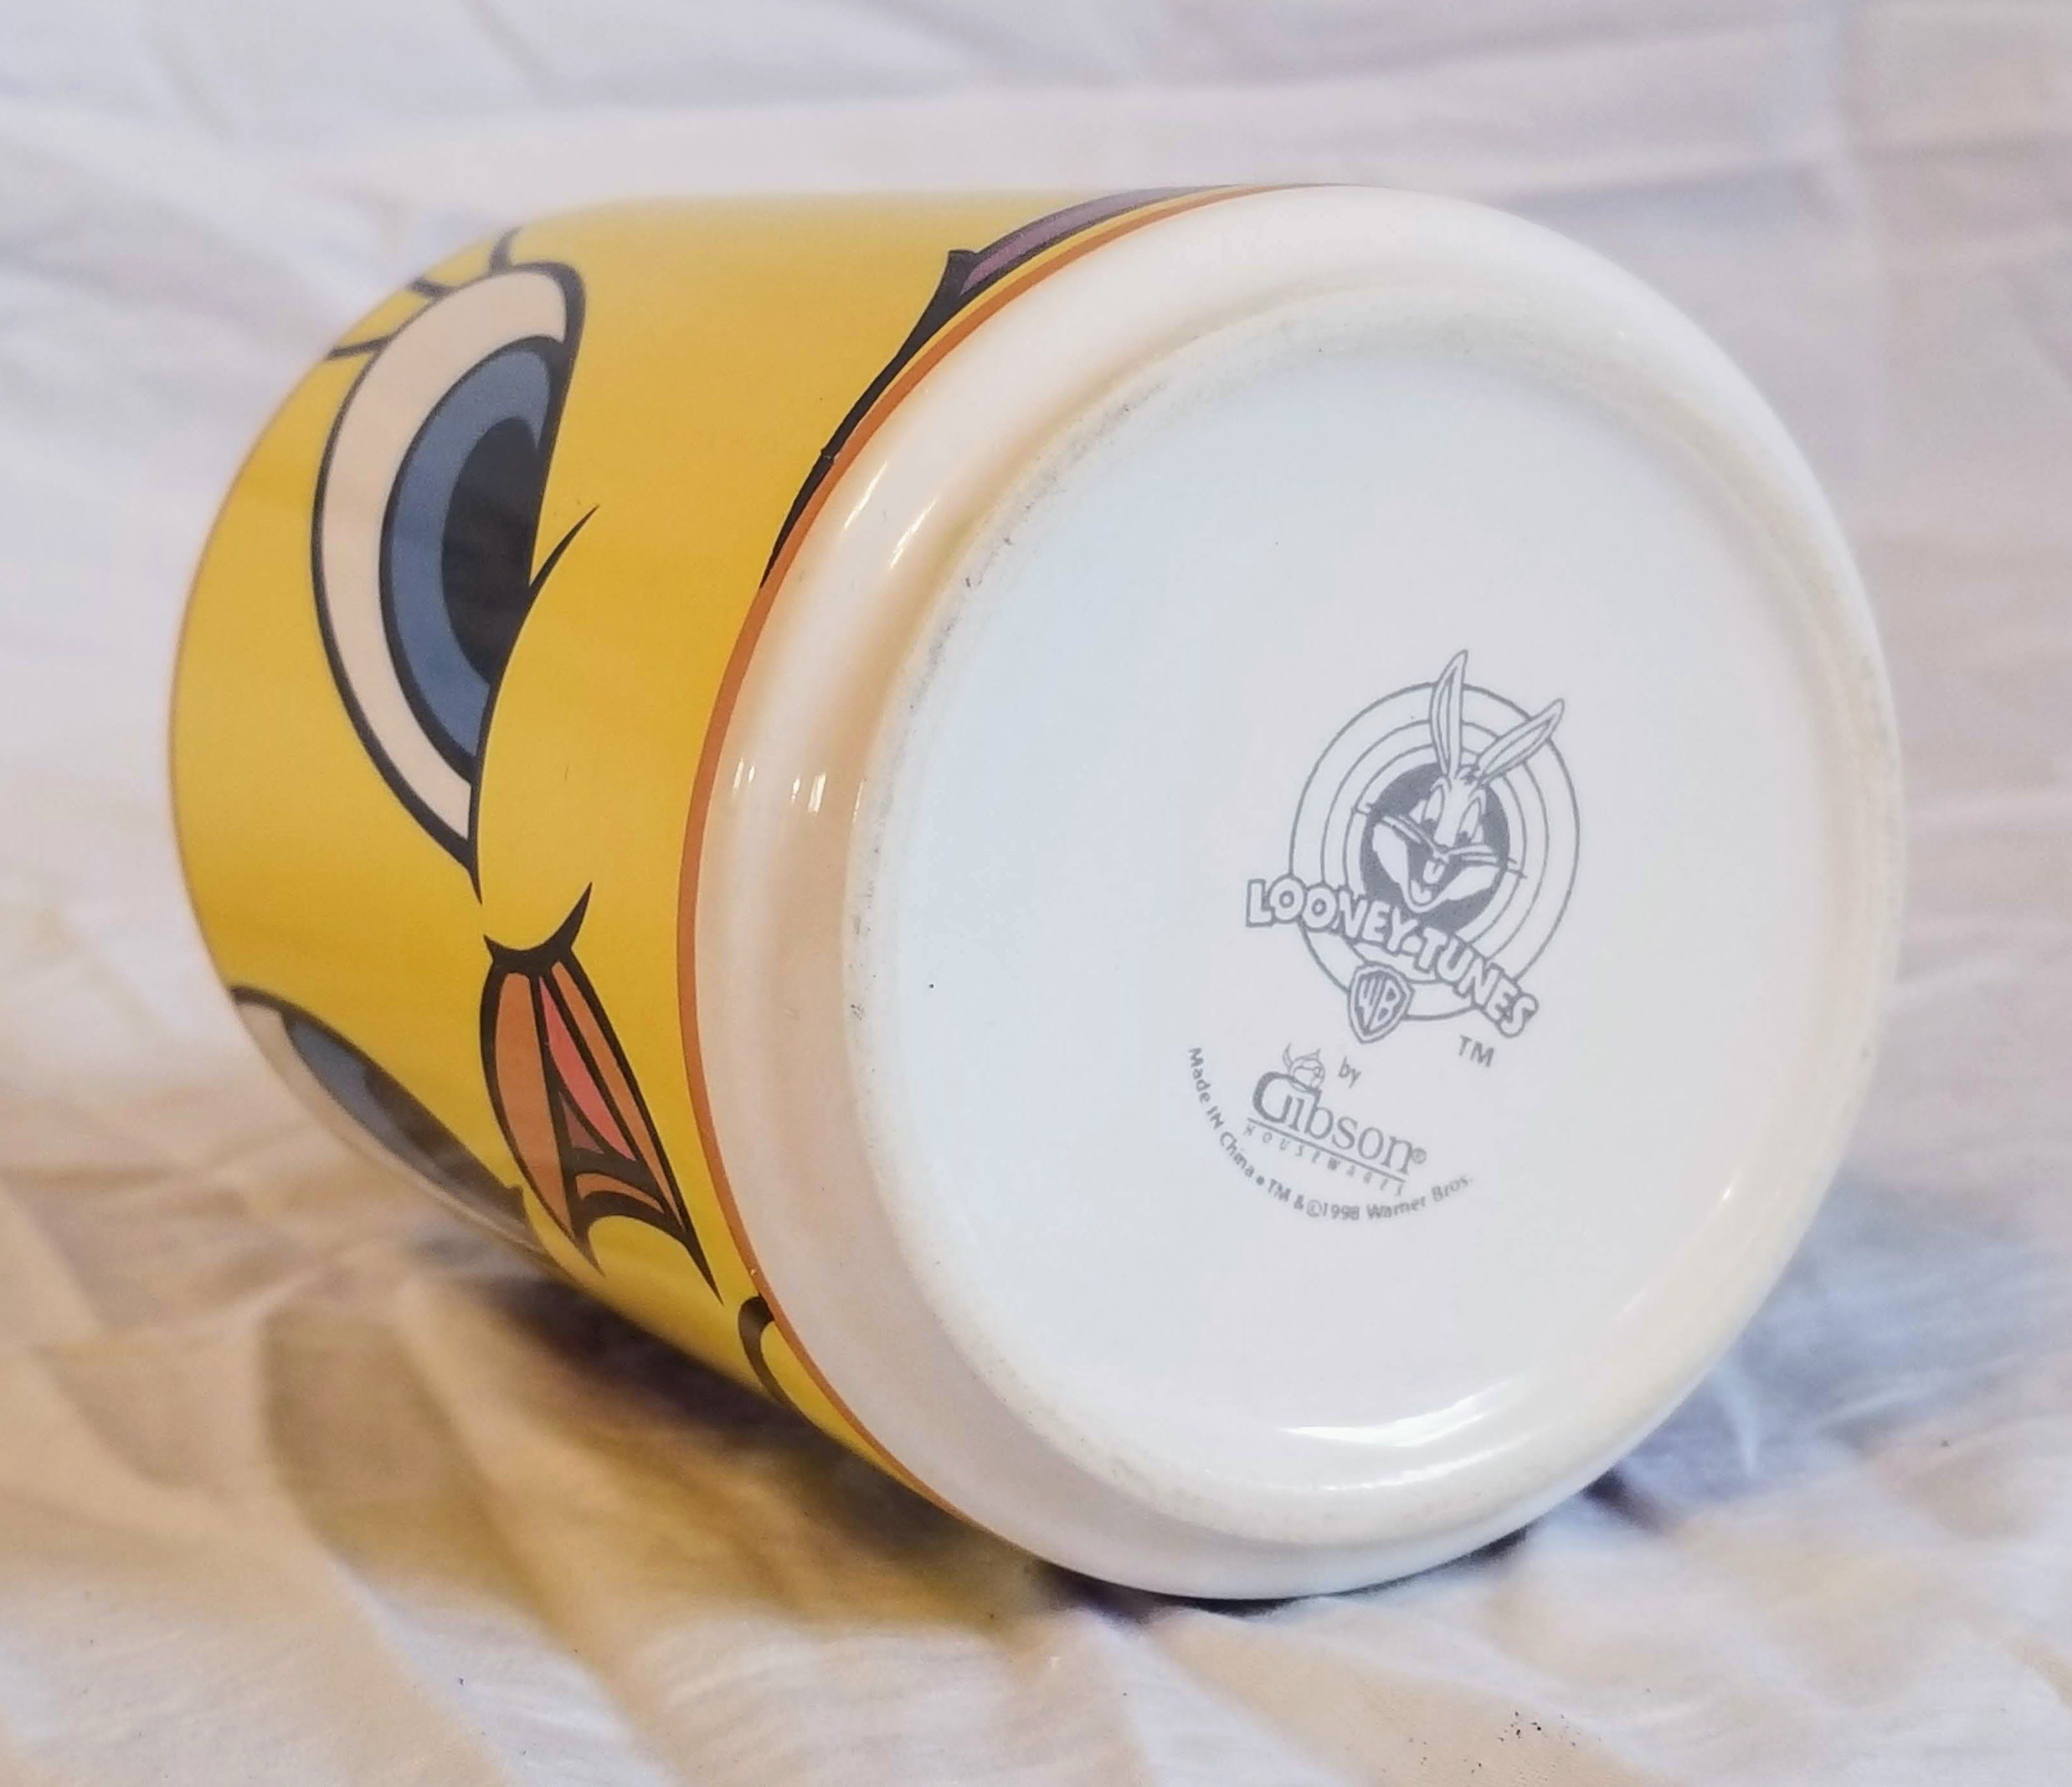 Vintage Official Warner Bros Tweety Bird Coffee Mug Looney Tunes Ceramic